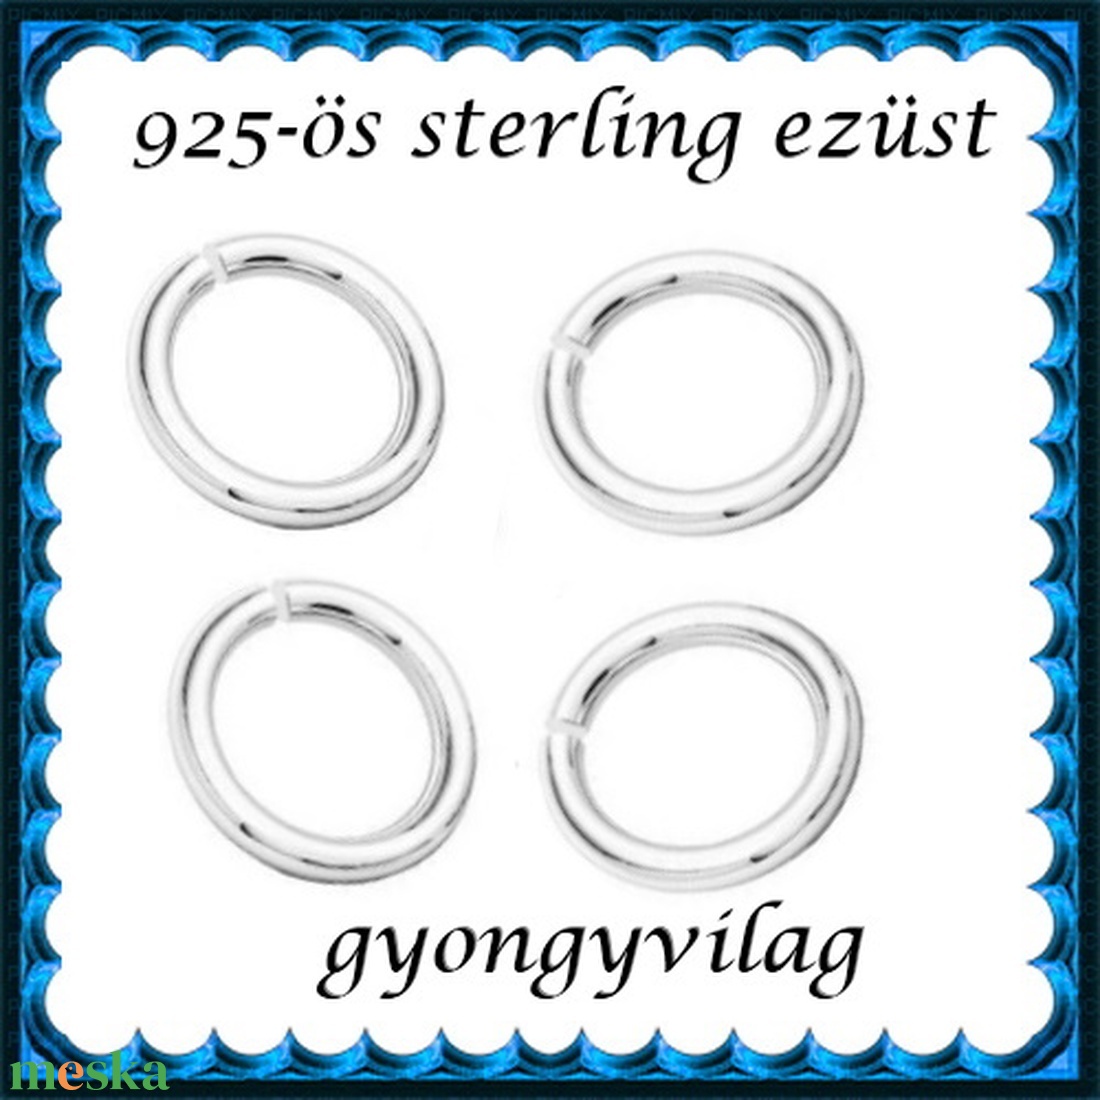 925-ös sterling ezüst ékszerkellék: karika nyitott ESZK NY 4,25x0,5 8db/csomag - gyöngy, ékszerkellék - egyéb alkatrész - Meska.hu